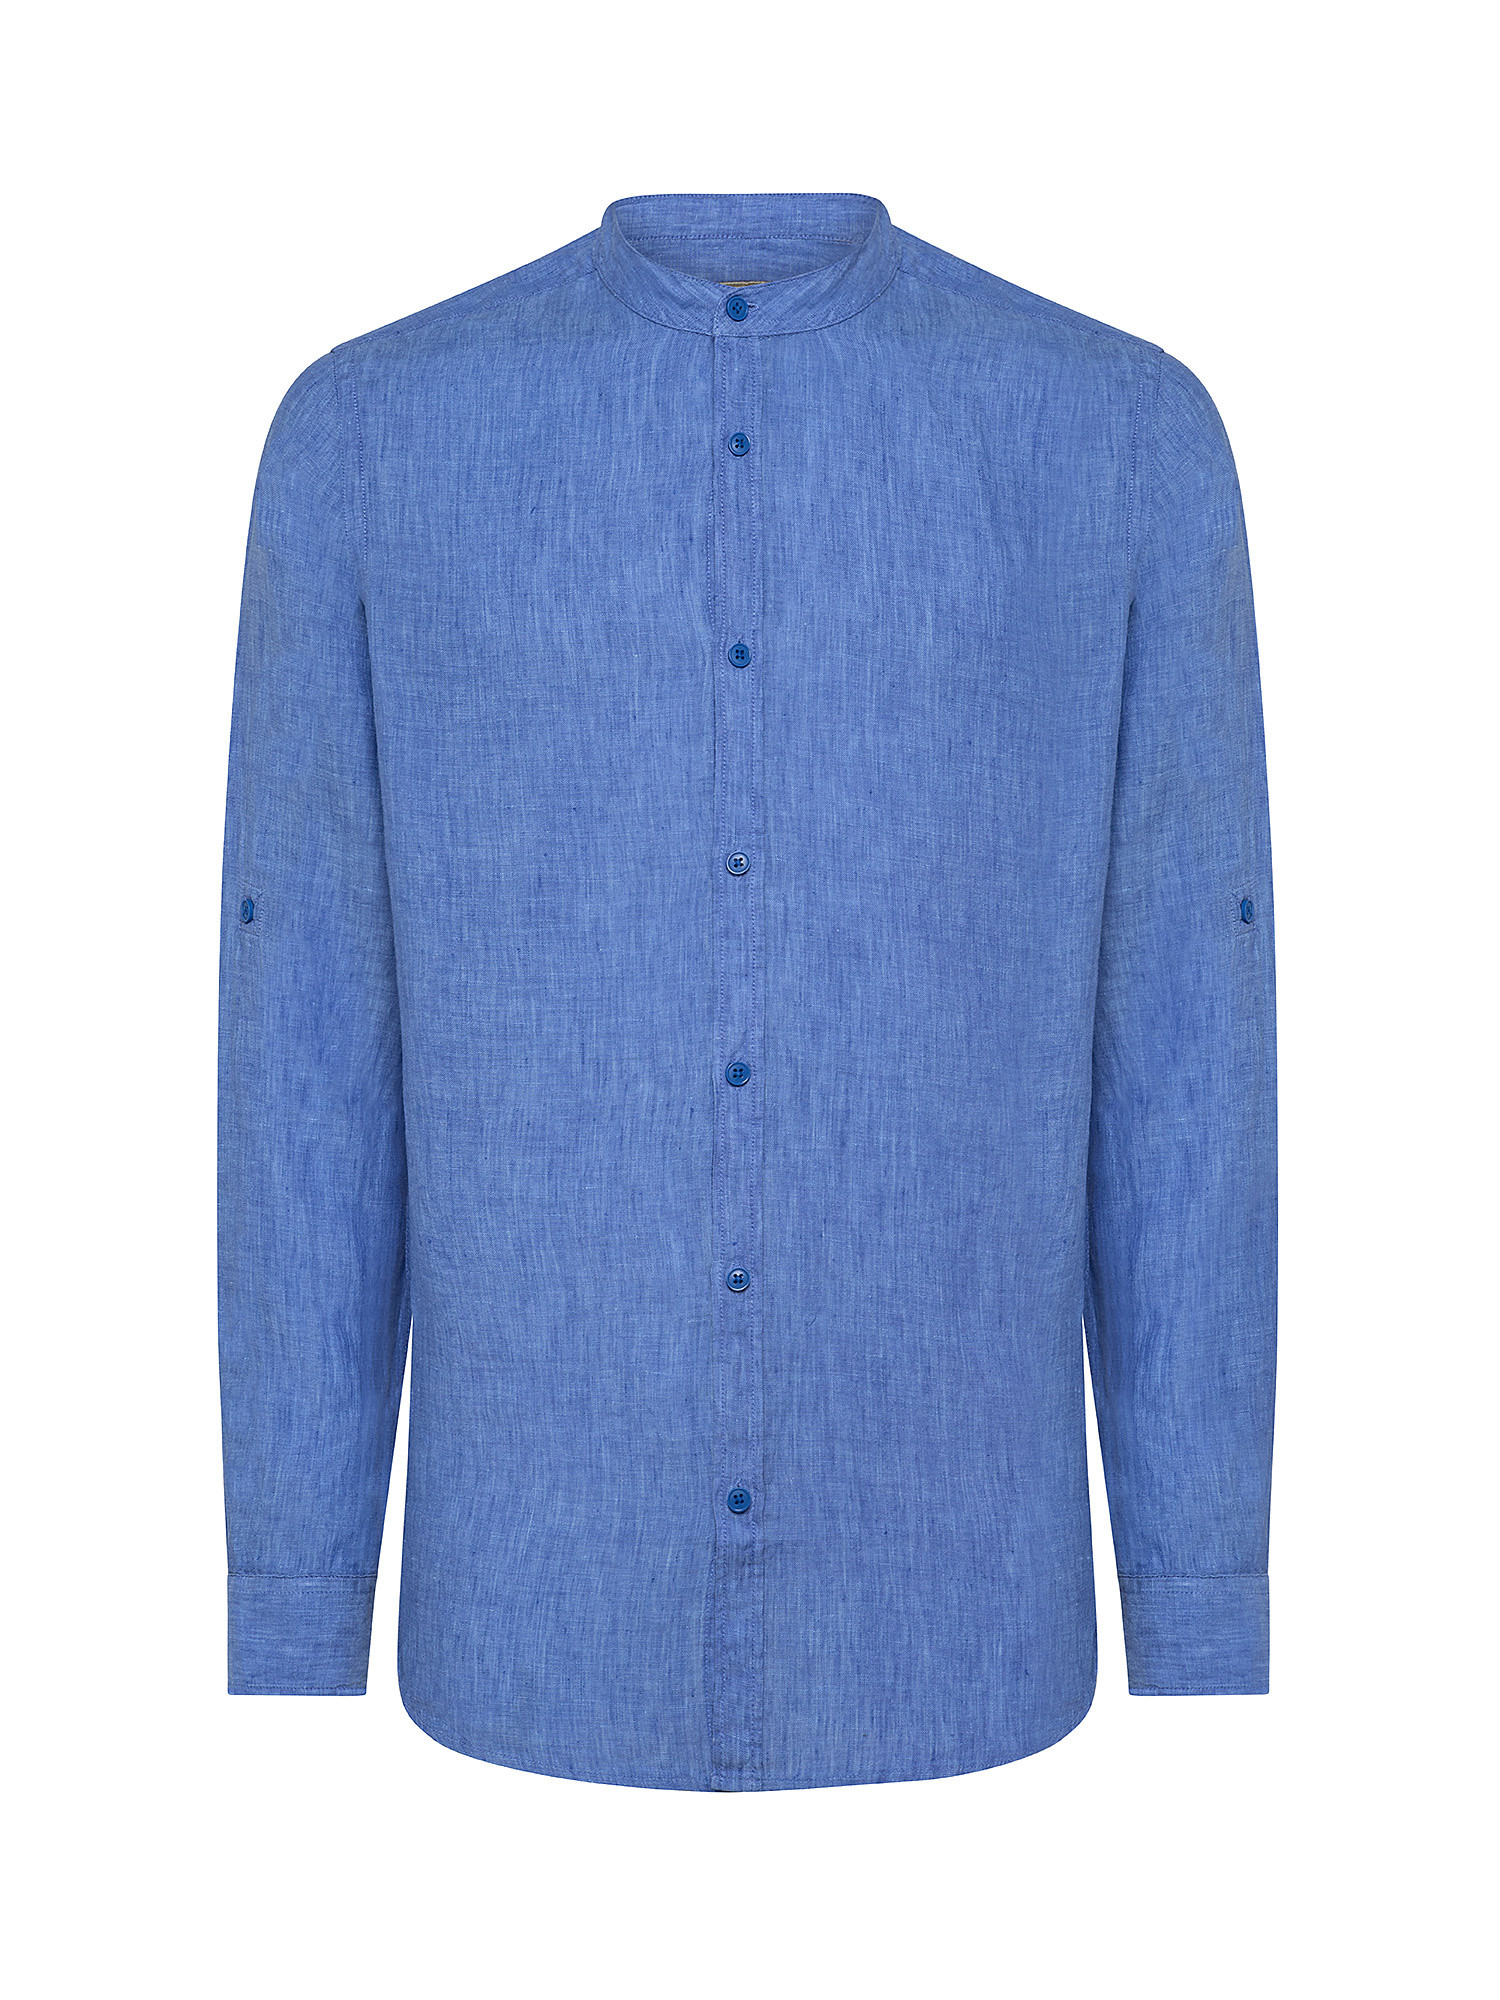 Camicia puro lino collo coreana, Azzurro, large image number 0